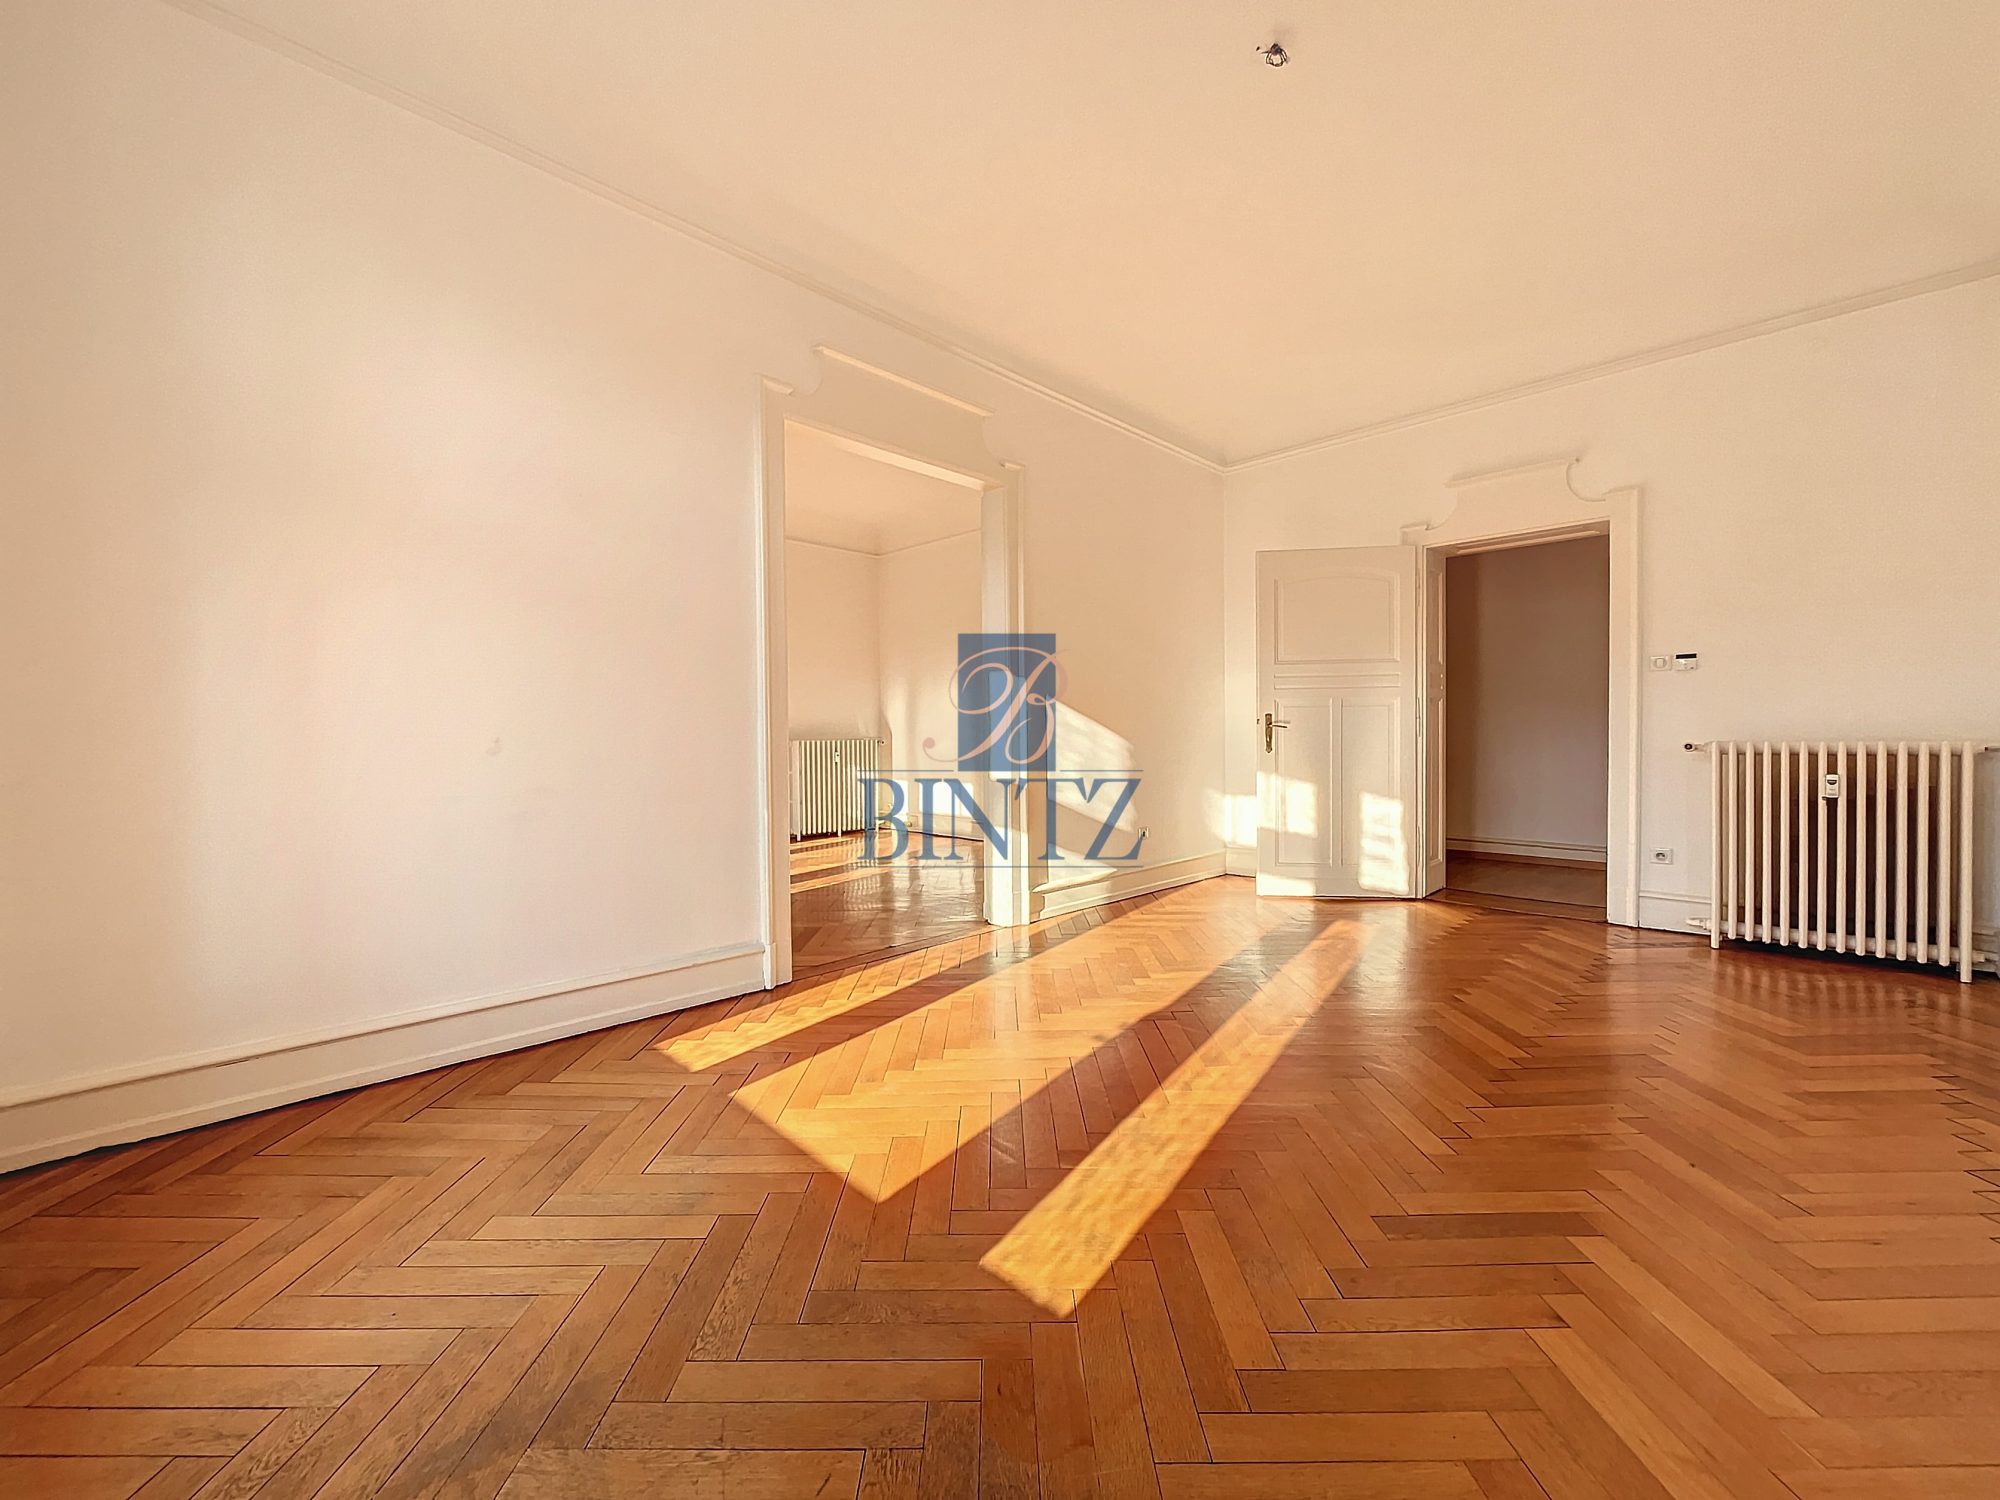 Exceptionnel 5 pièces avec balcon - location appartement Strasbourg - Bintz Immobilier - 9